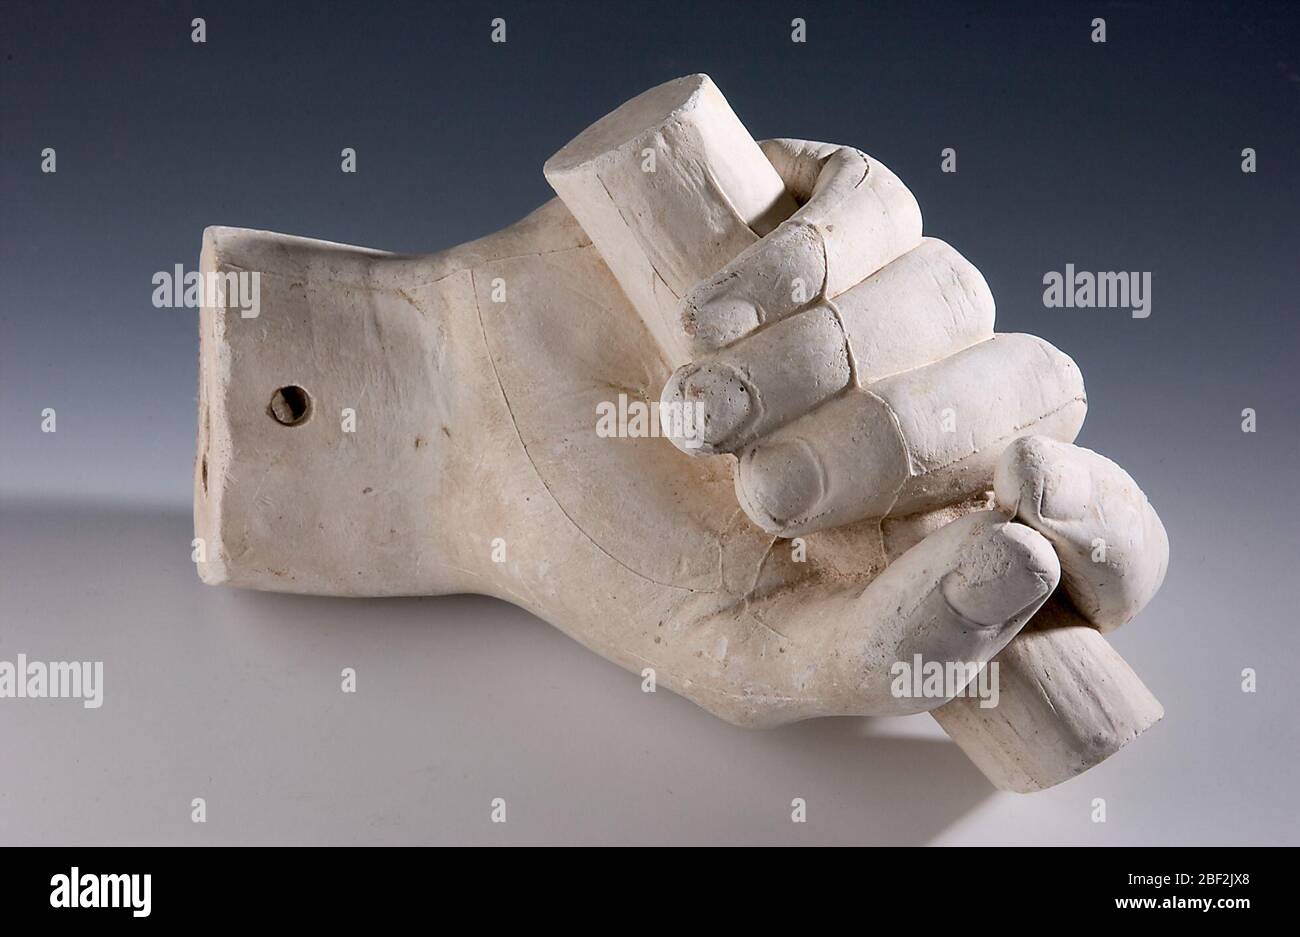 Fundición de una mano derecha no identificada agarrando una varilla. Hay muchos fragmentos de yeso de detalles anatómicos en la colección Hiram Powers que no pueden ser identificados. Foto de stock